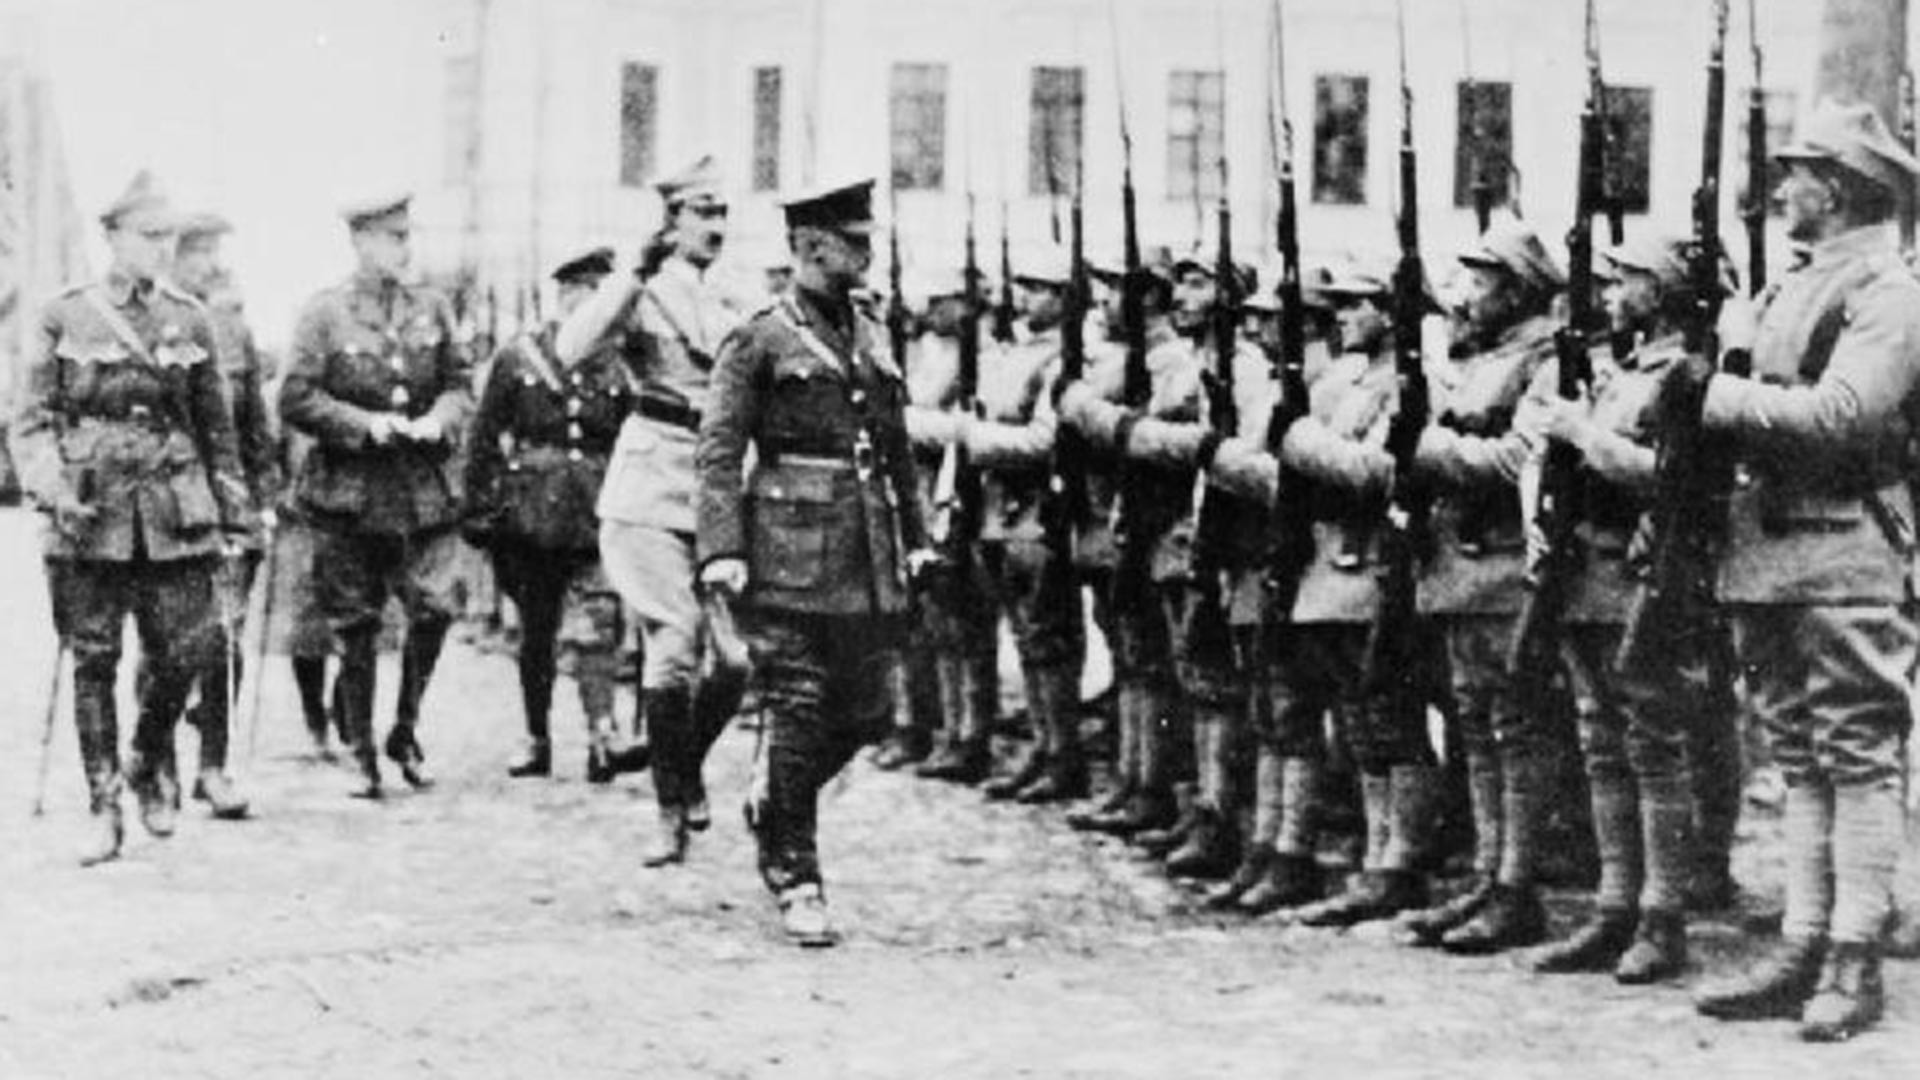 Пољски, енглески и француски официри на смотри одреда пољских трупа такозваног Мурманског батаљона пре слања на фронт, Архангелск, 1919.